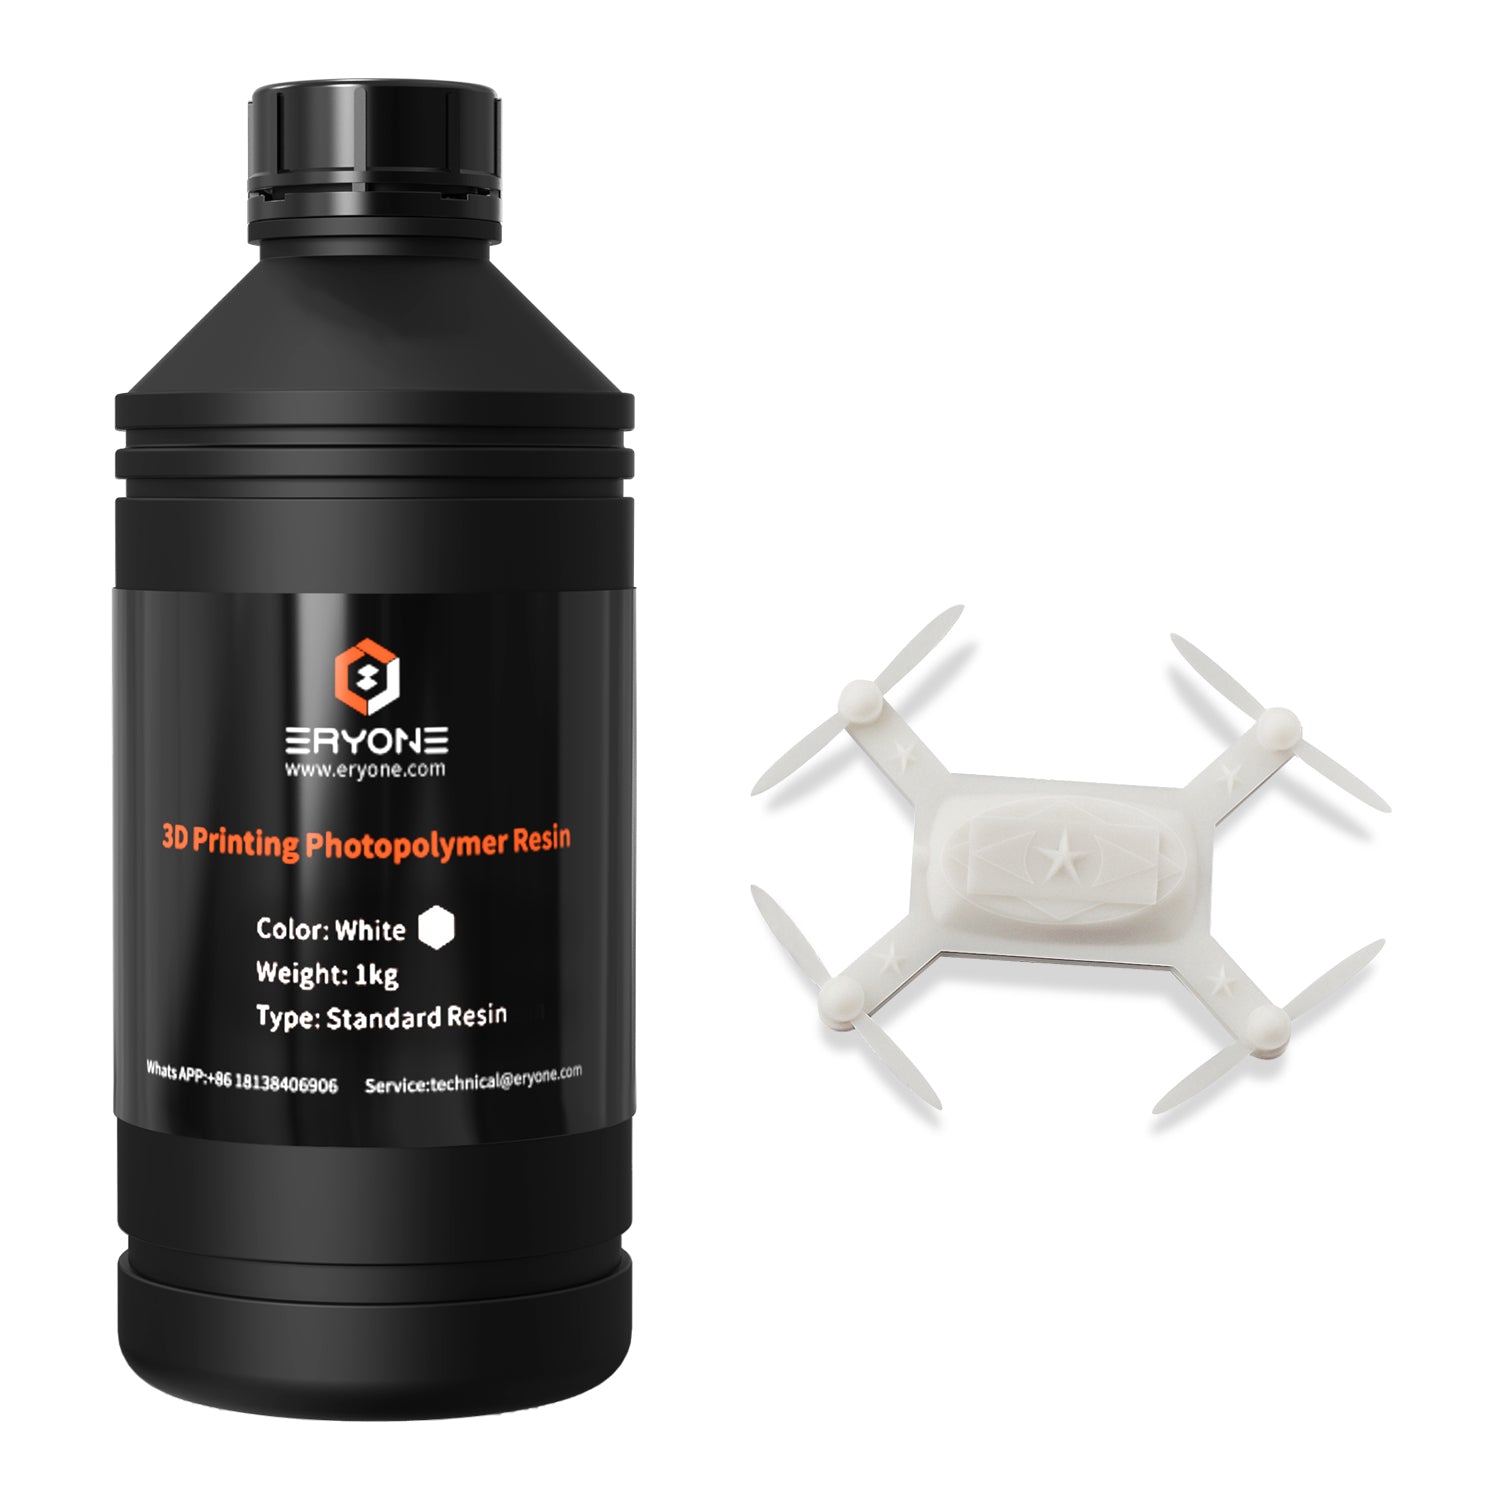 ERYONE Super Low Odor 3D Printer Photopolymer Resin 1kG - eryone3d